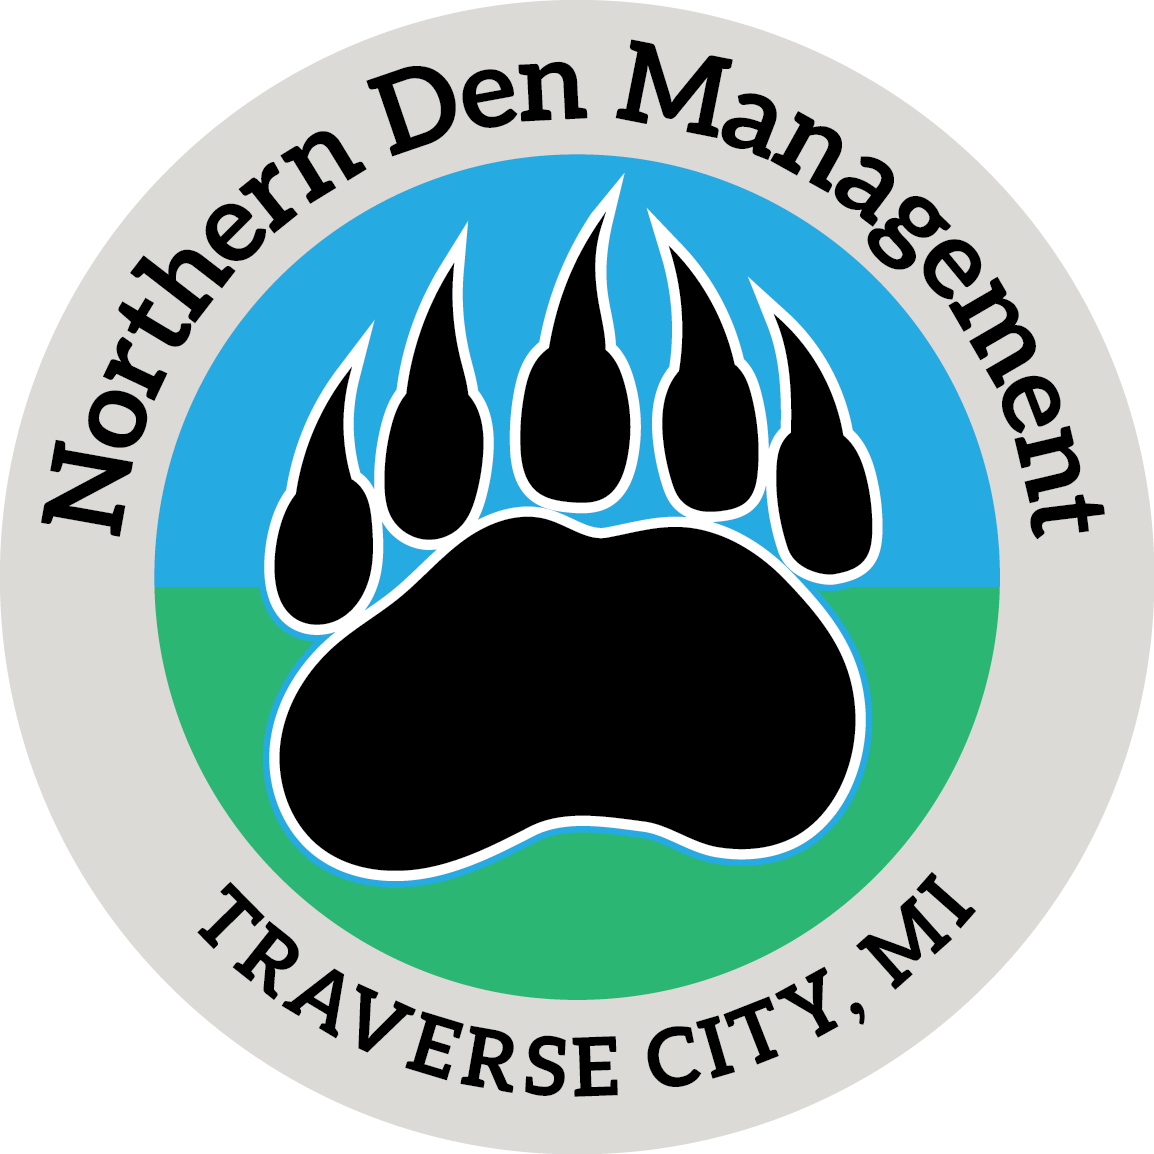 Northern Den Management LLC